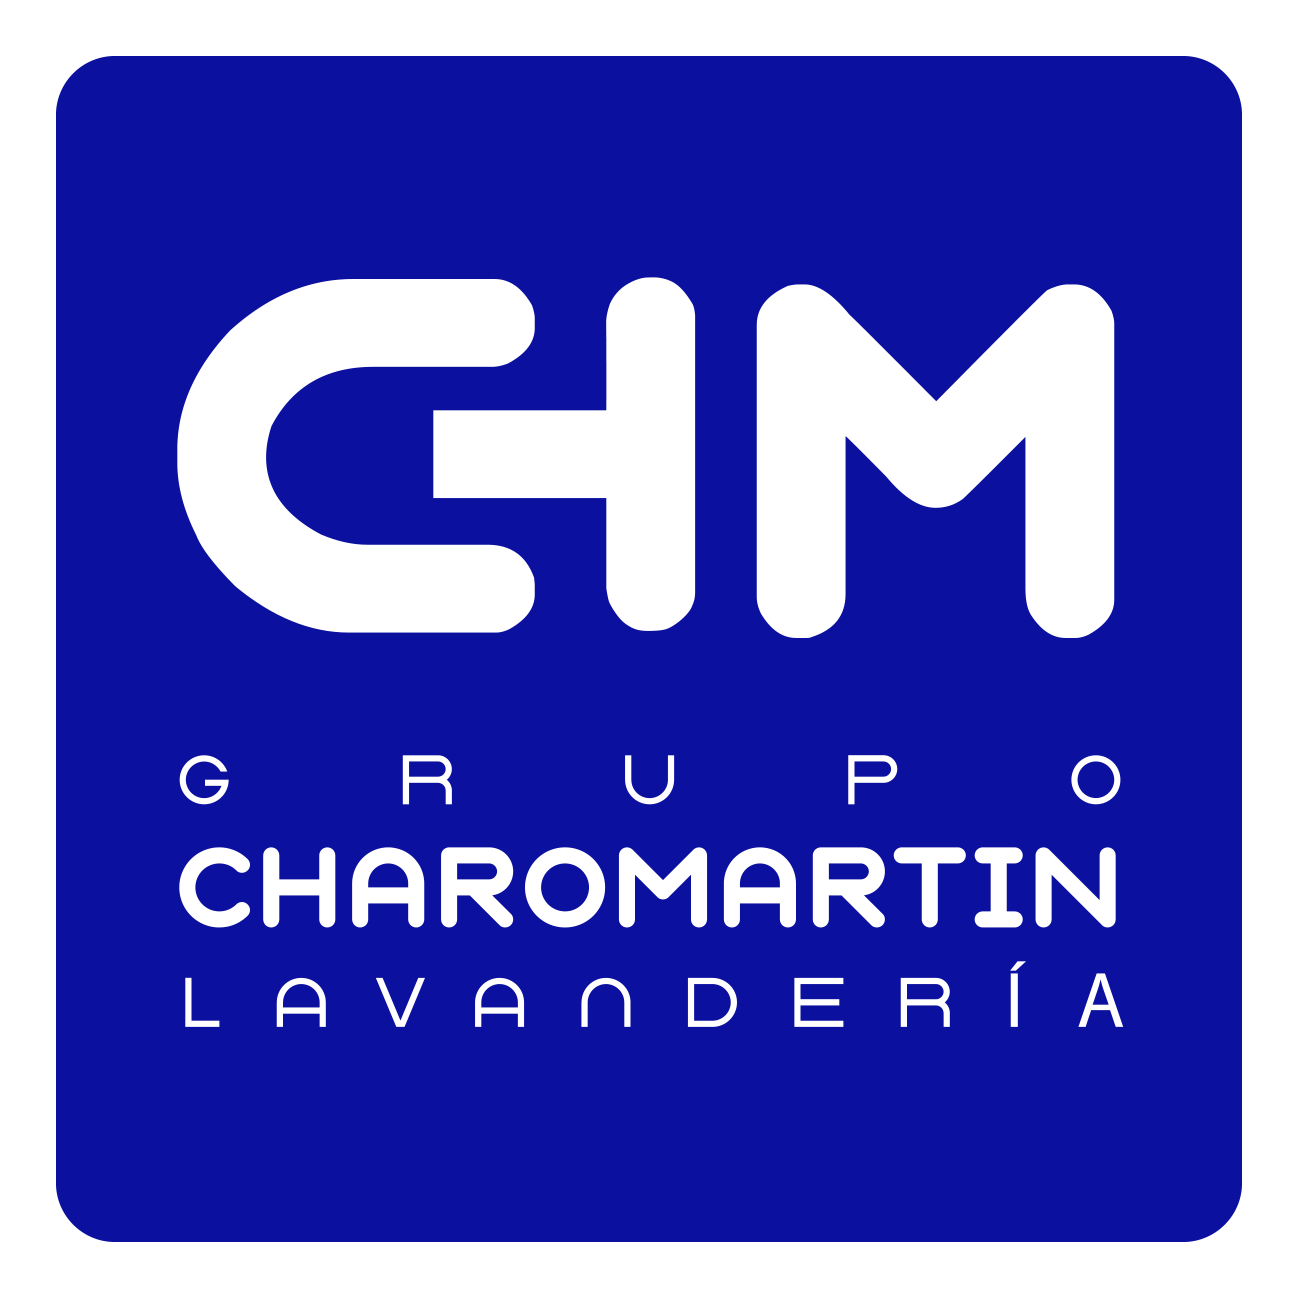 Lavanderia Charo Martin